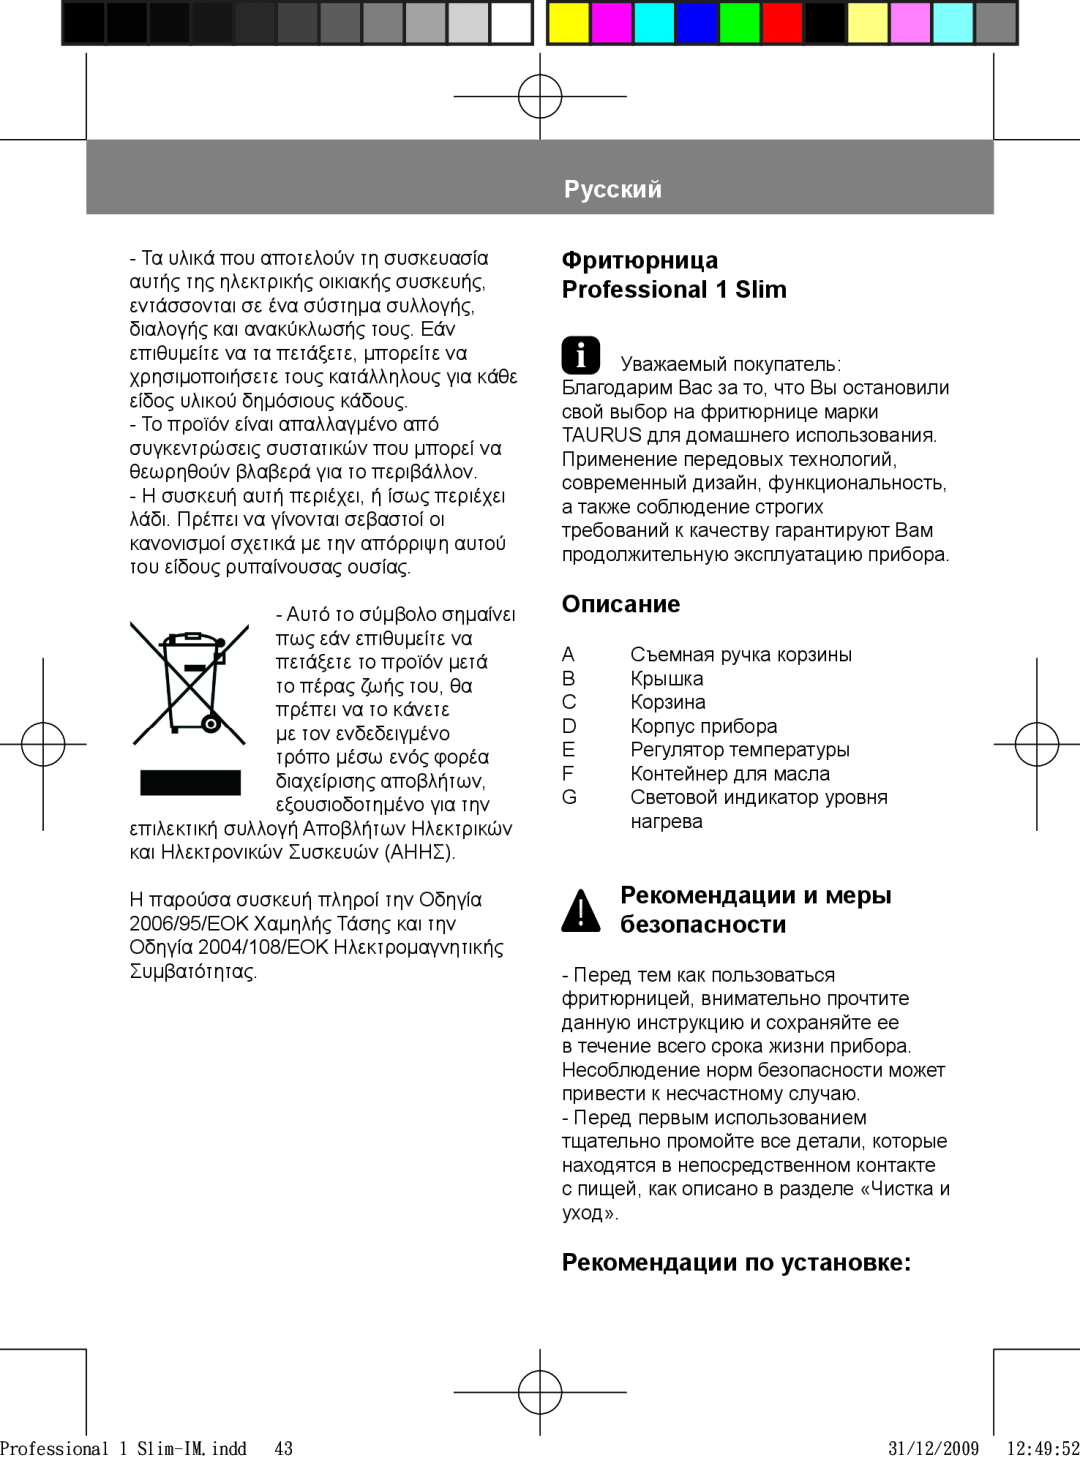 Taurus Group 1 Slim manual Русский, Описание, Рекомендации и меры безопасности, Рекомендации по установке 